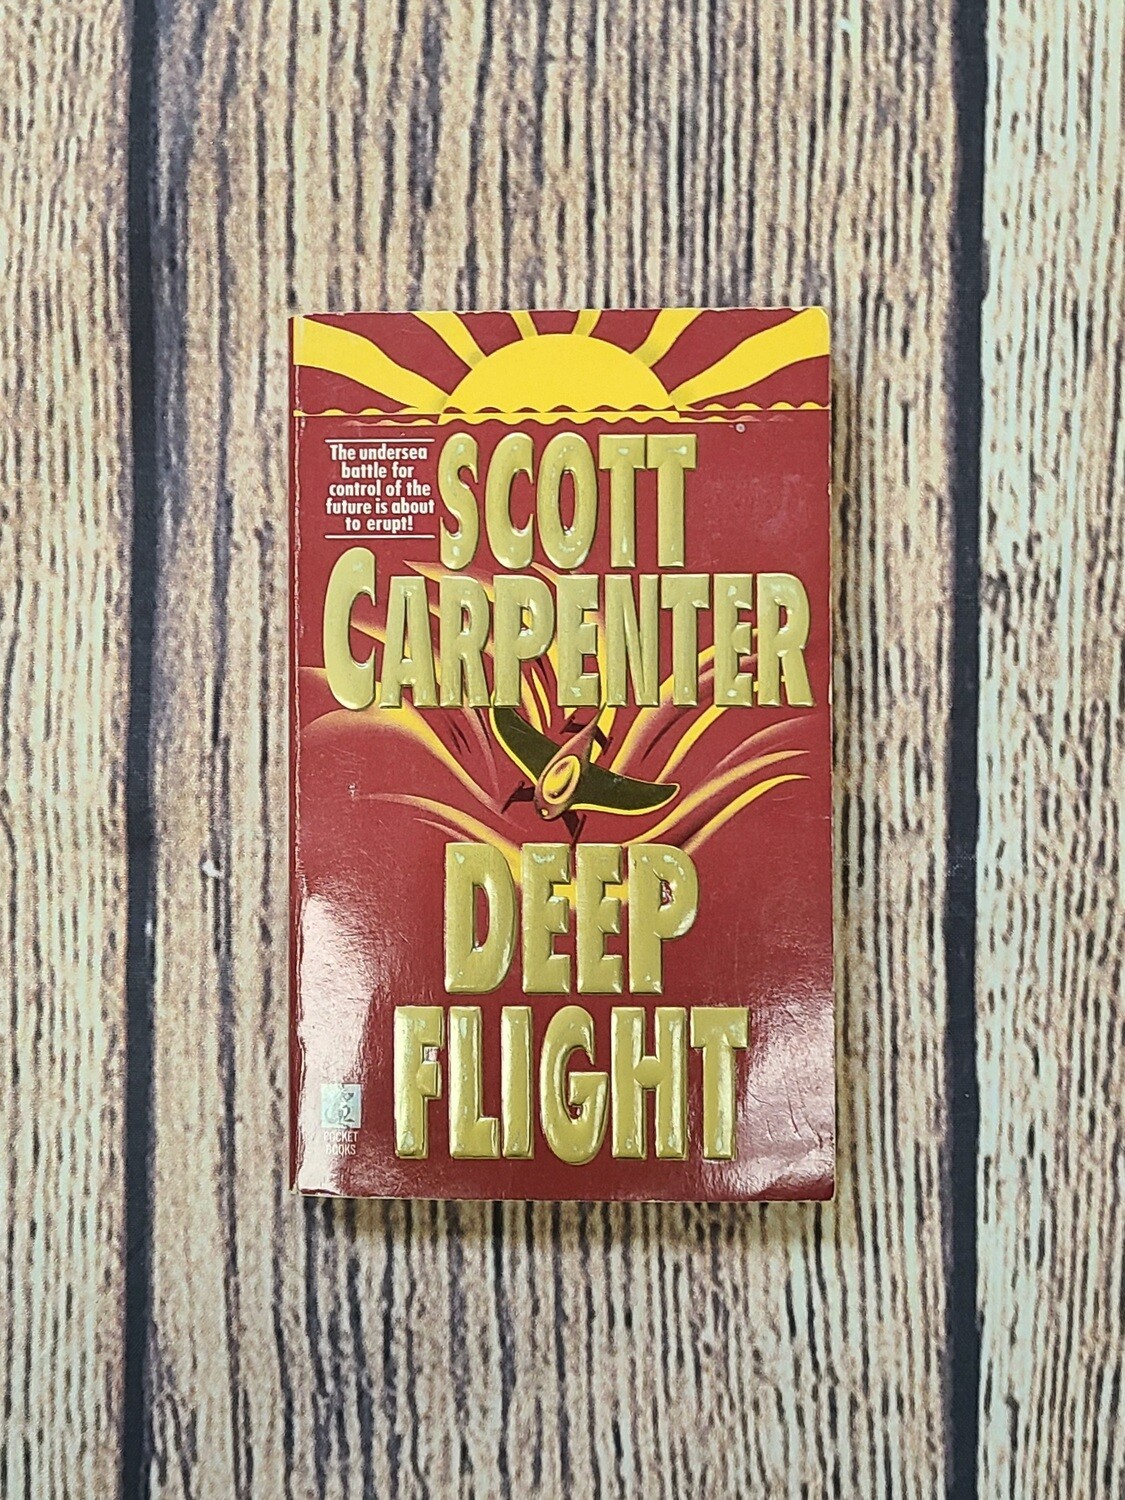 Deep Flight by Scott Carpenter